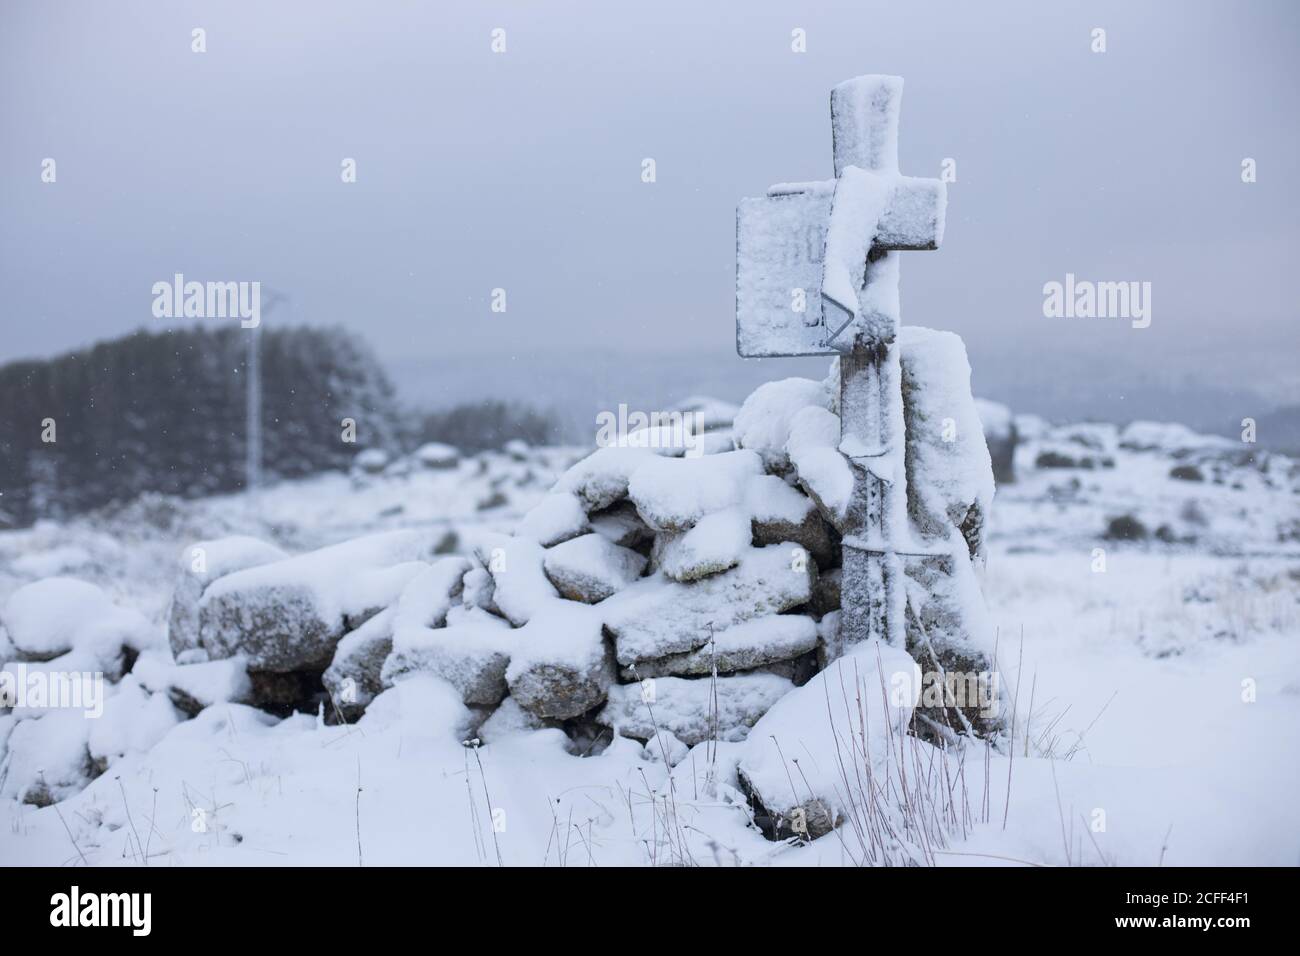 Croix en bois enneigée près des rochers avec champ vide neigeux et ciel gris nuageux sur fond Banque D'Images